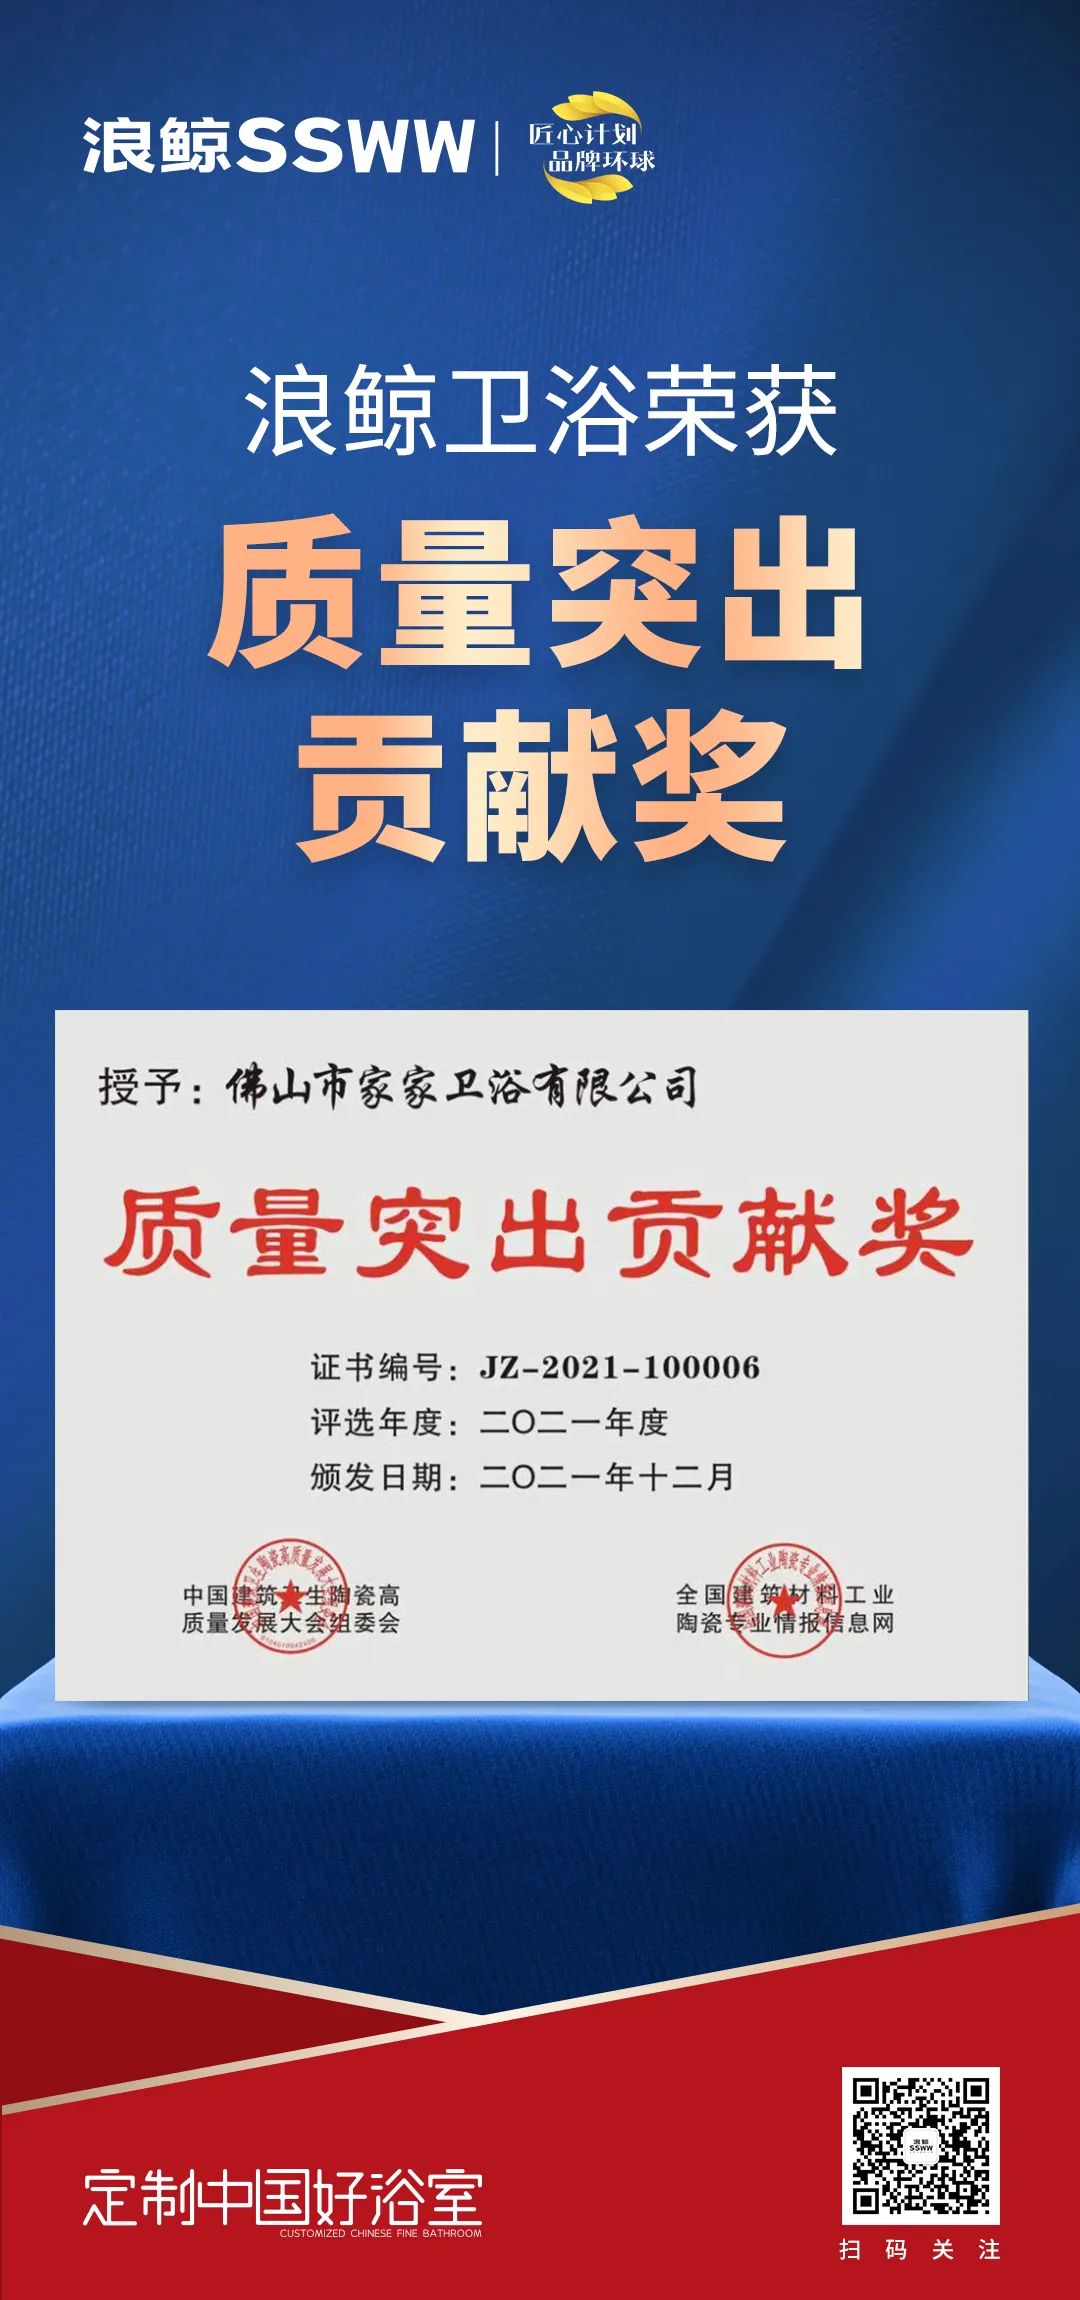 载誉而归！浪鲸卫浴揽获中国建筑卫生陶瓷行业科技大会两项大奖(图3)